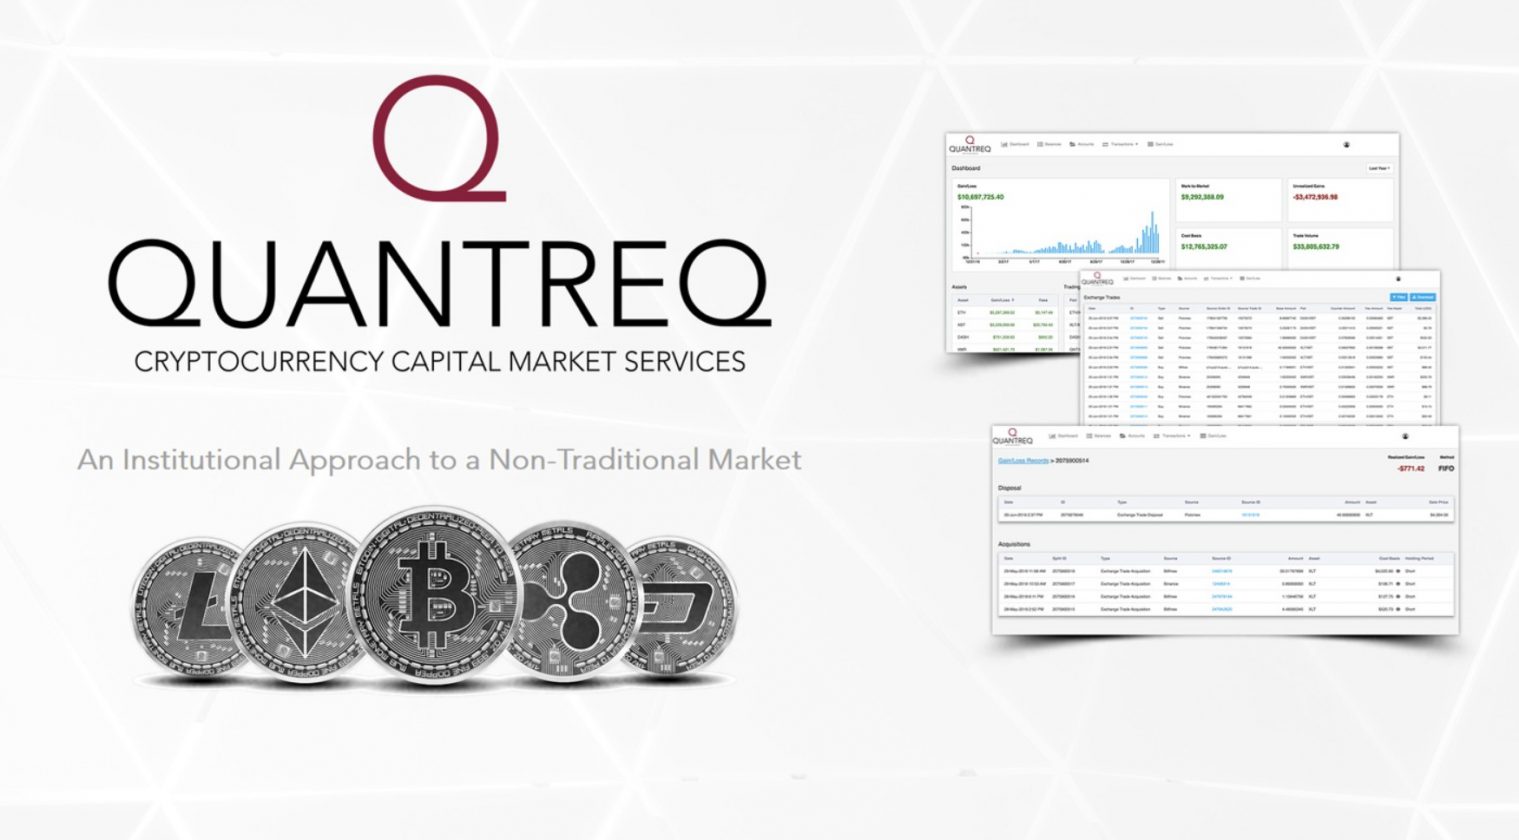 Kripto hizmetleri sağlayacısı Quantreq, ilk kripto fon hizmetini başlattı.